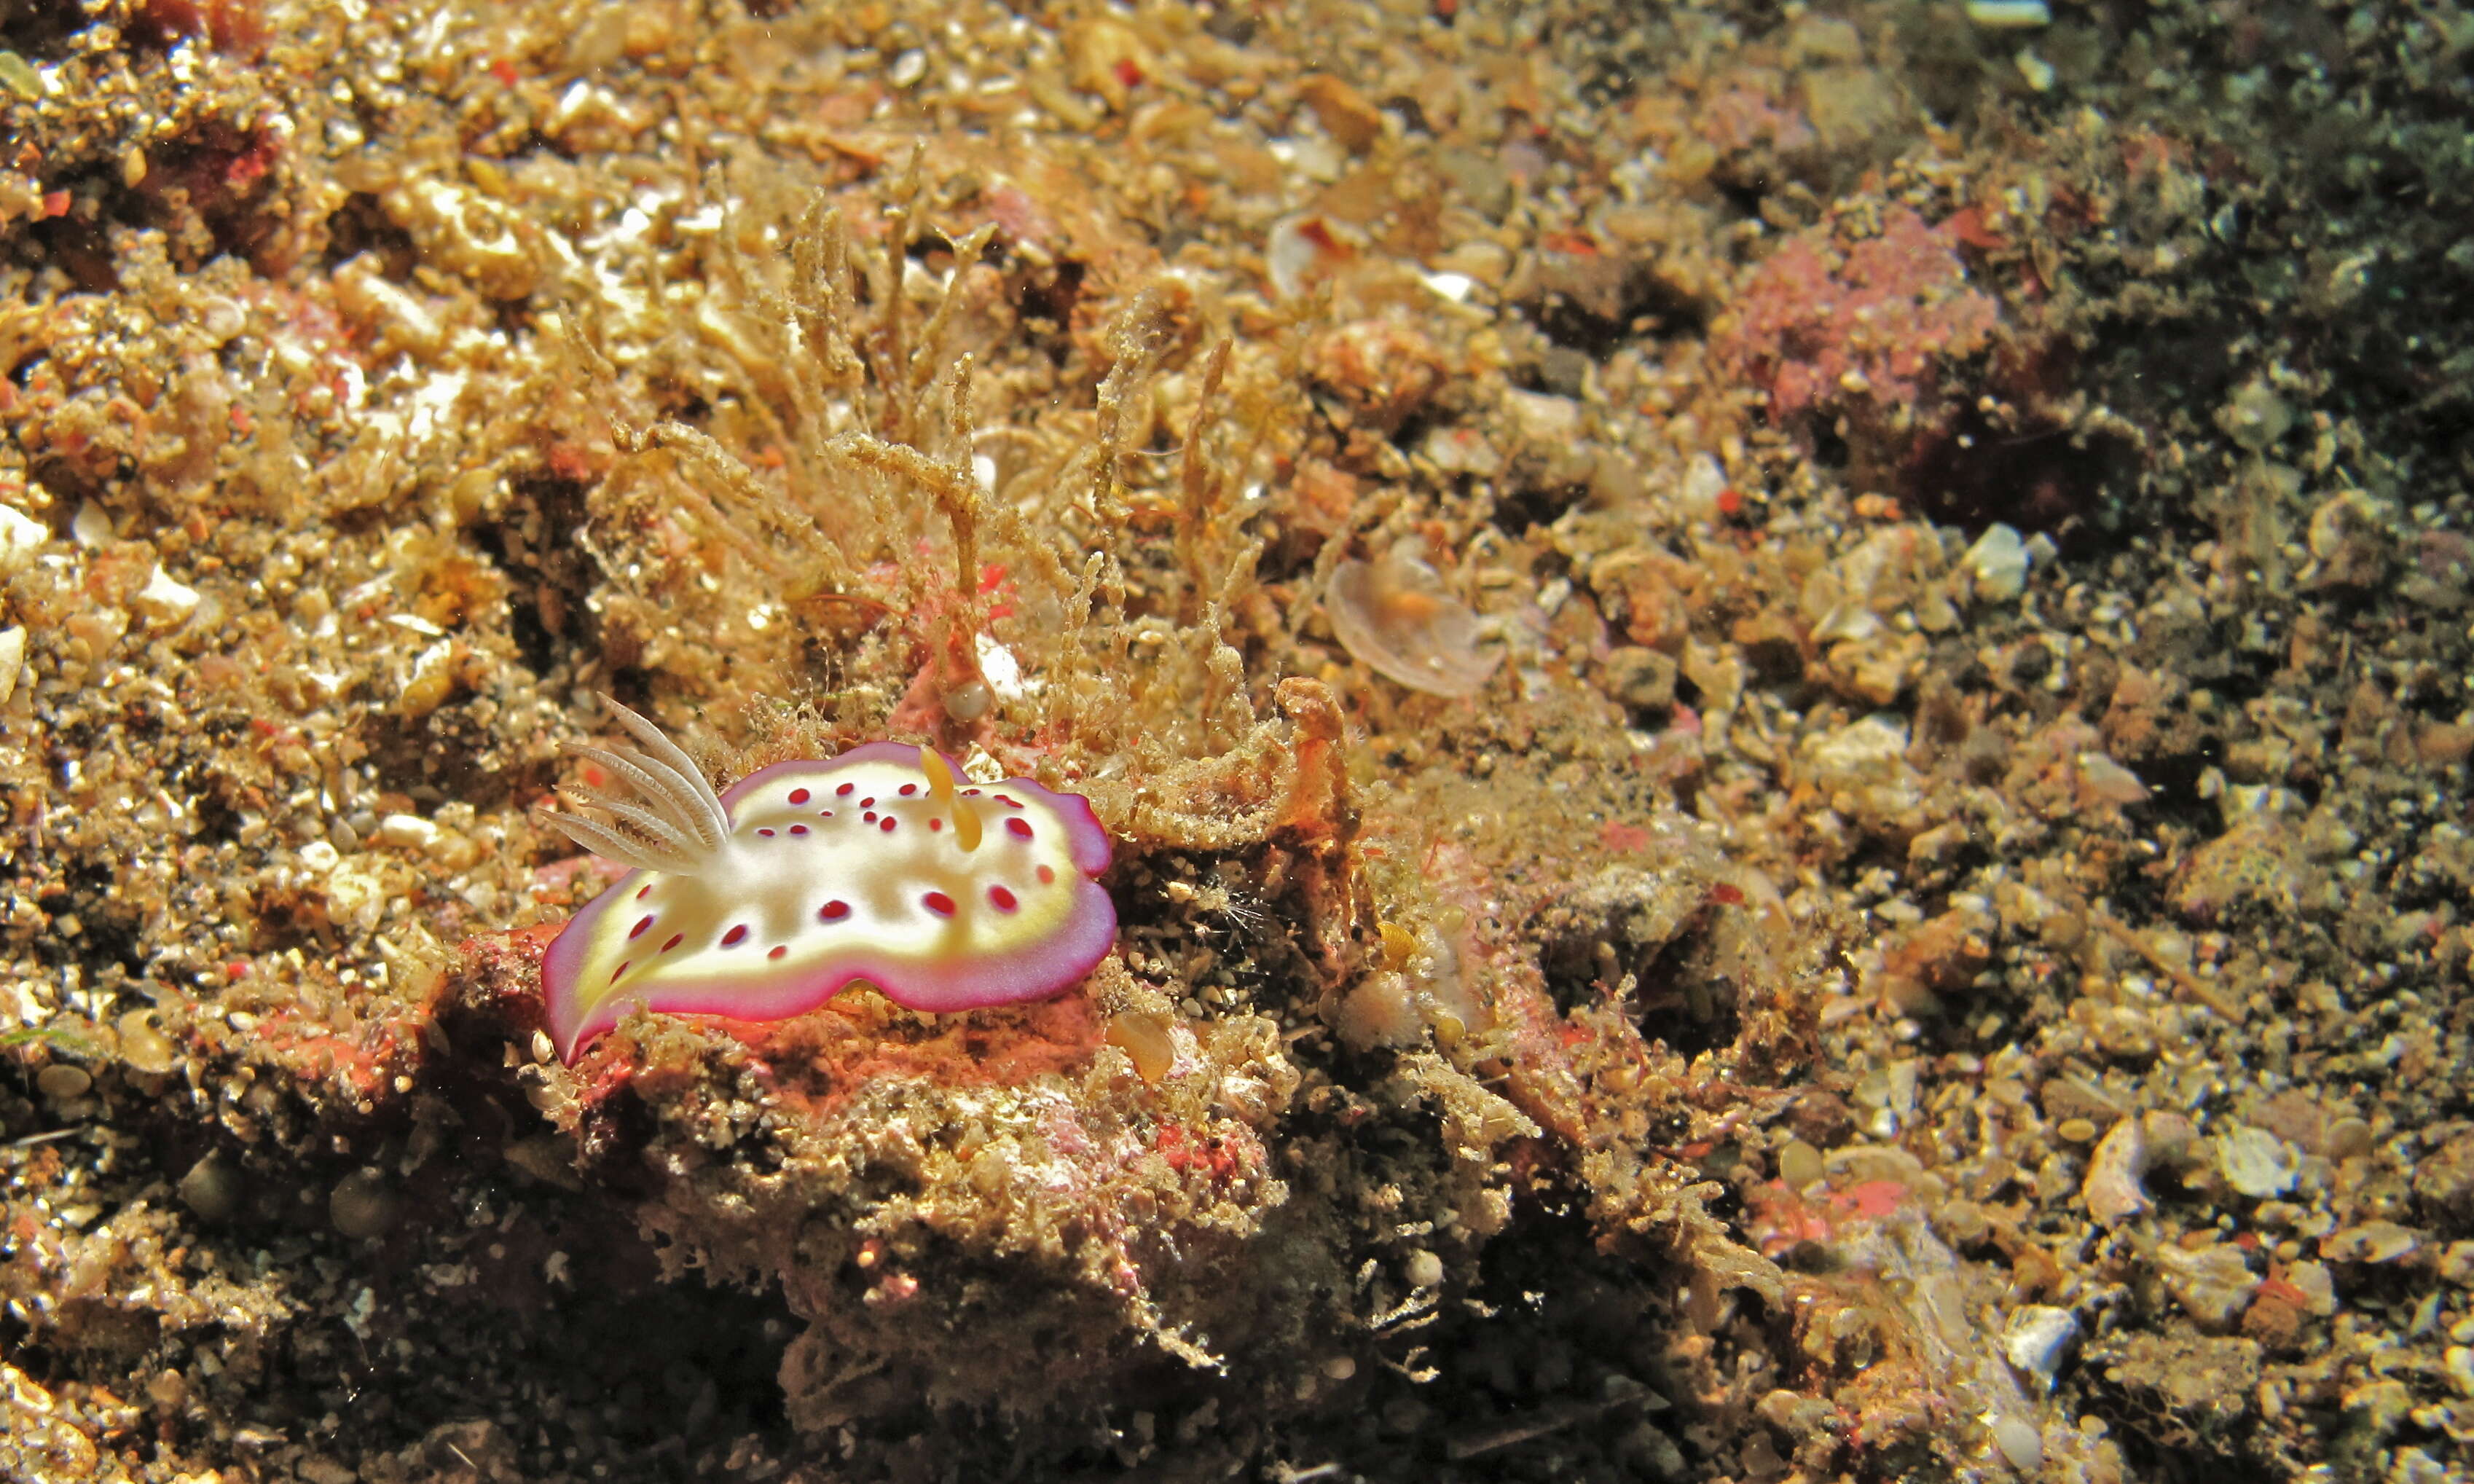 Image of Purple spot skirt lifter slug